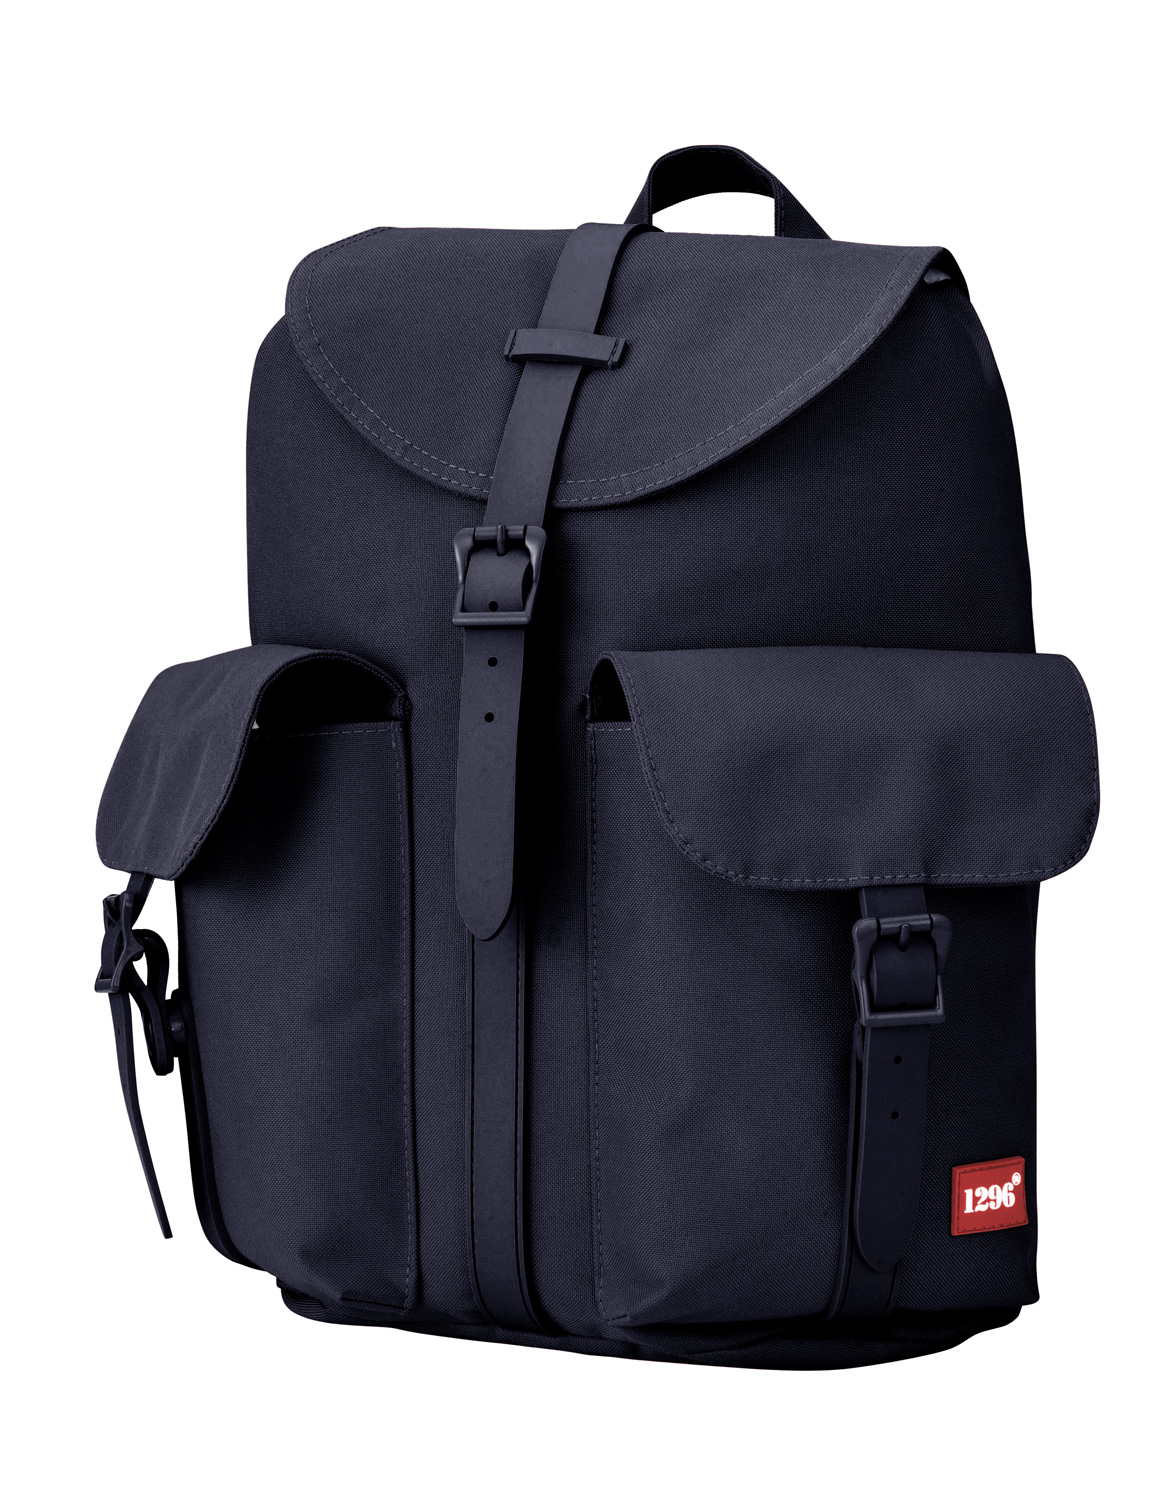 blnbag U5 - Handtaschen-Rucksack Tagesrucksack für Frauen mit Tabletfach, 23 cm, 12 L, Dunkelblau